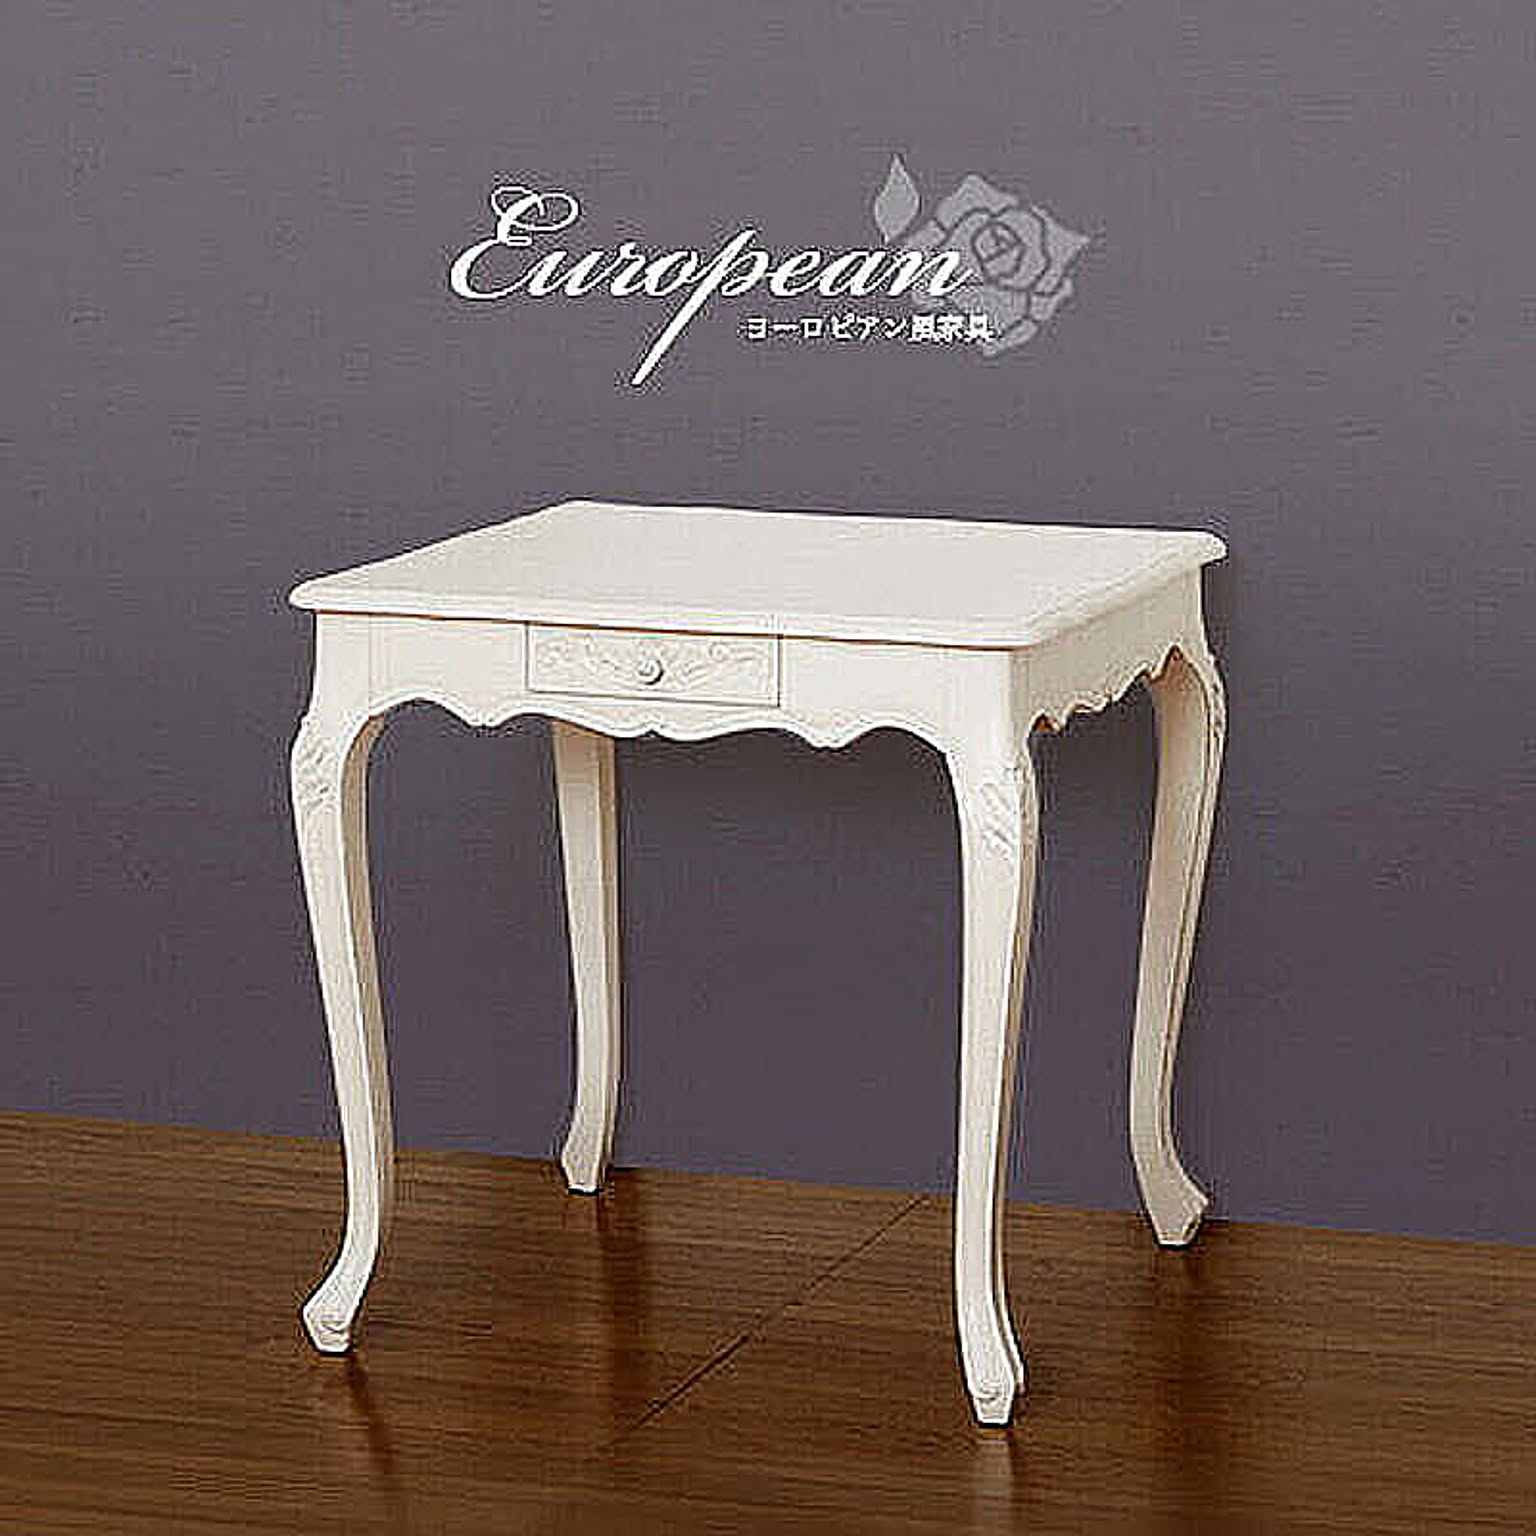 ダイニングテーブル 幅75cm マホガニー ホワイト 白 木製 テーブル 2人掛け 木製ダイニングテーブル 猫脚 テーブル アンティーク クラシック ラウンジテーブル ロマンティック